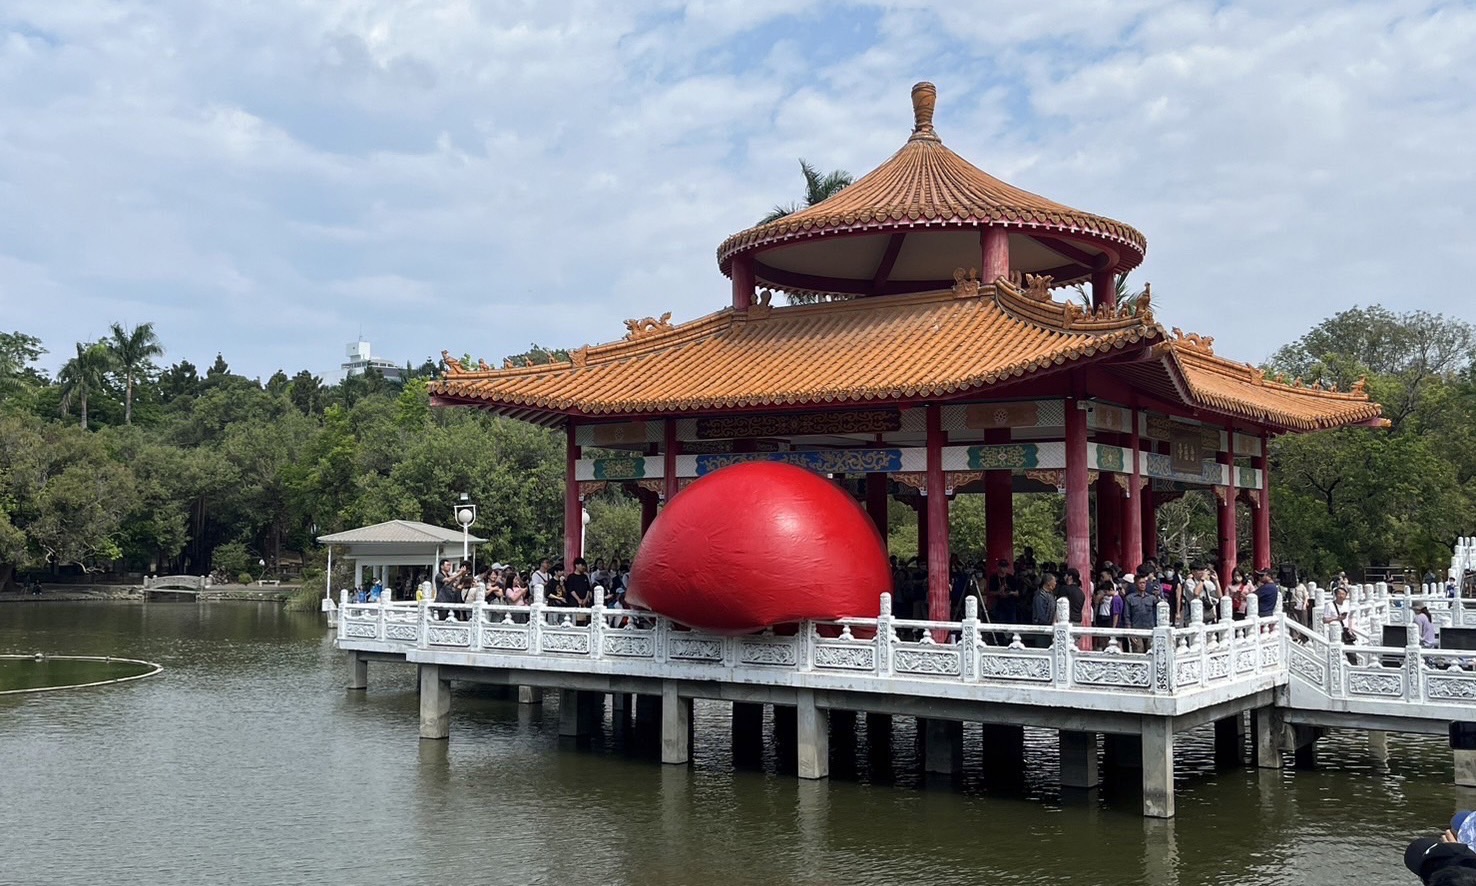  臺南巨大紅球現身 日吸4000人潮 